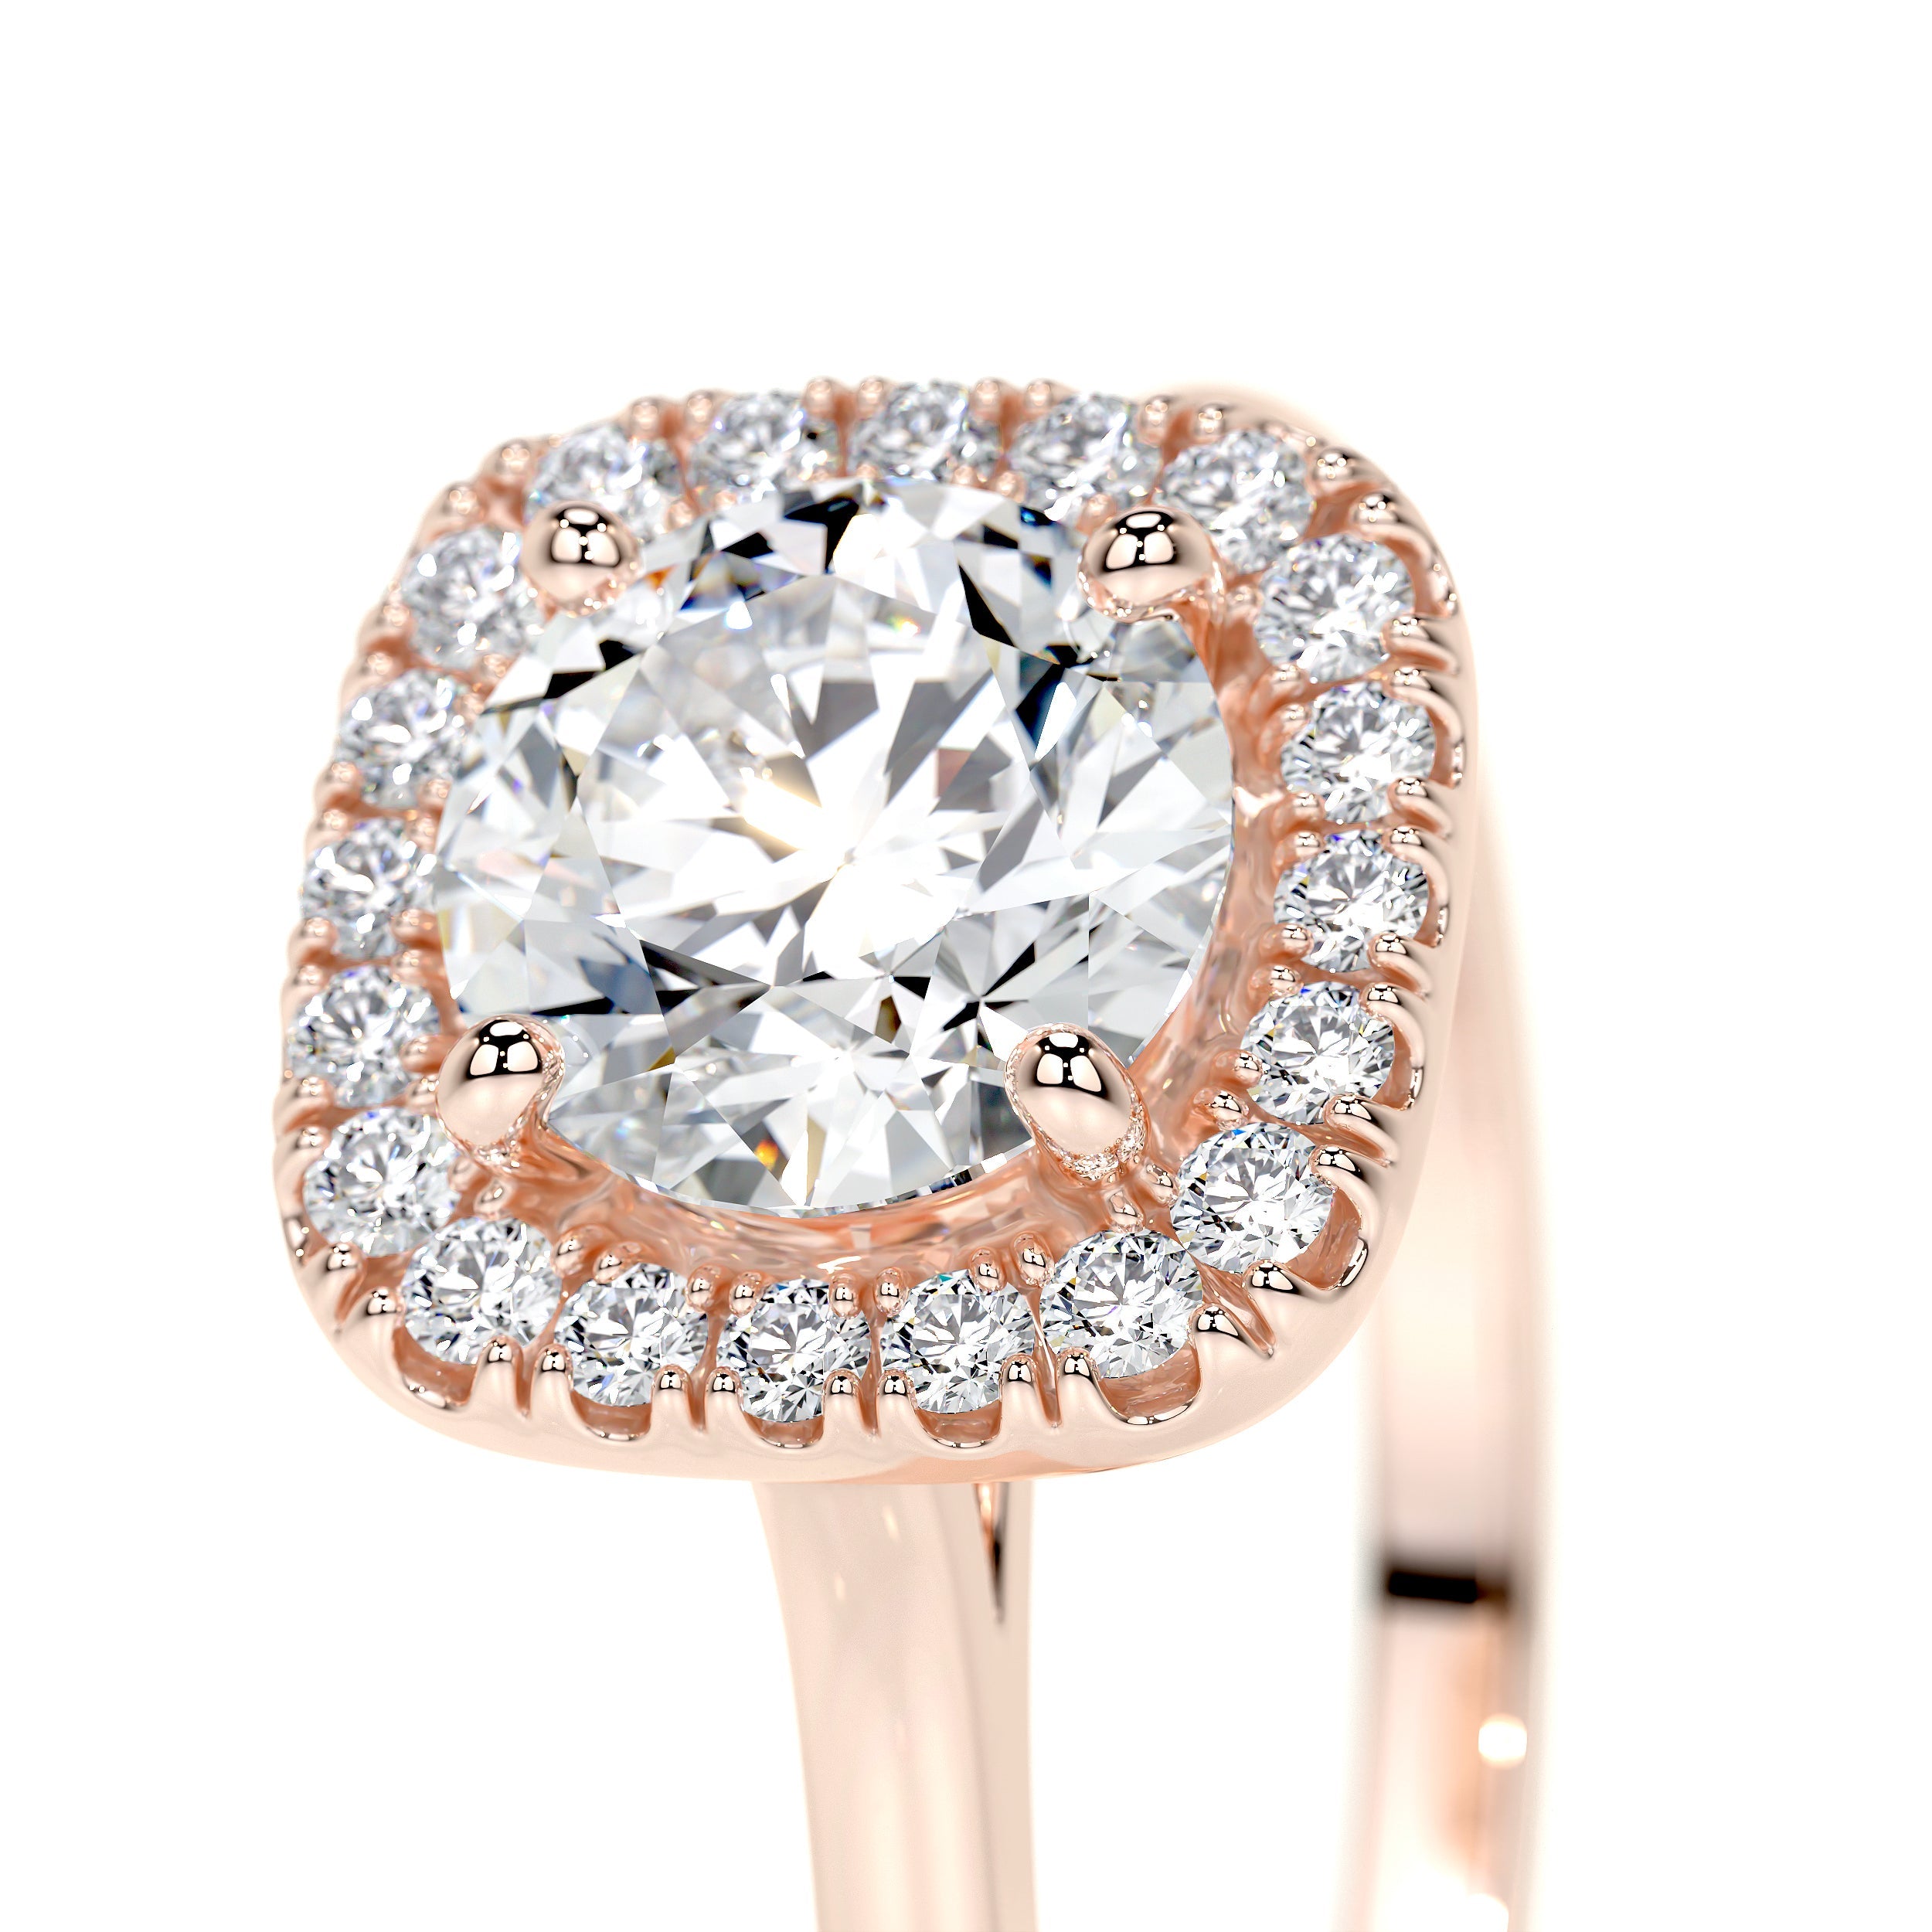 Claudia Lab Grown Diamond Ring   (1.15 Carat) -14K Rose Gold